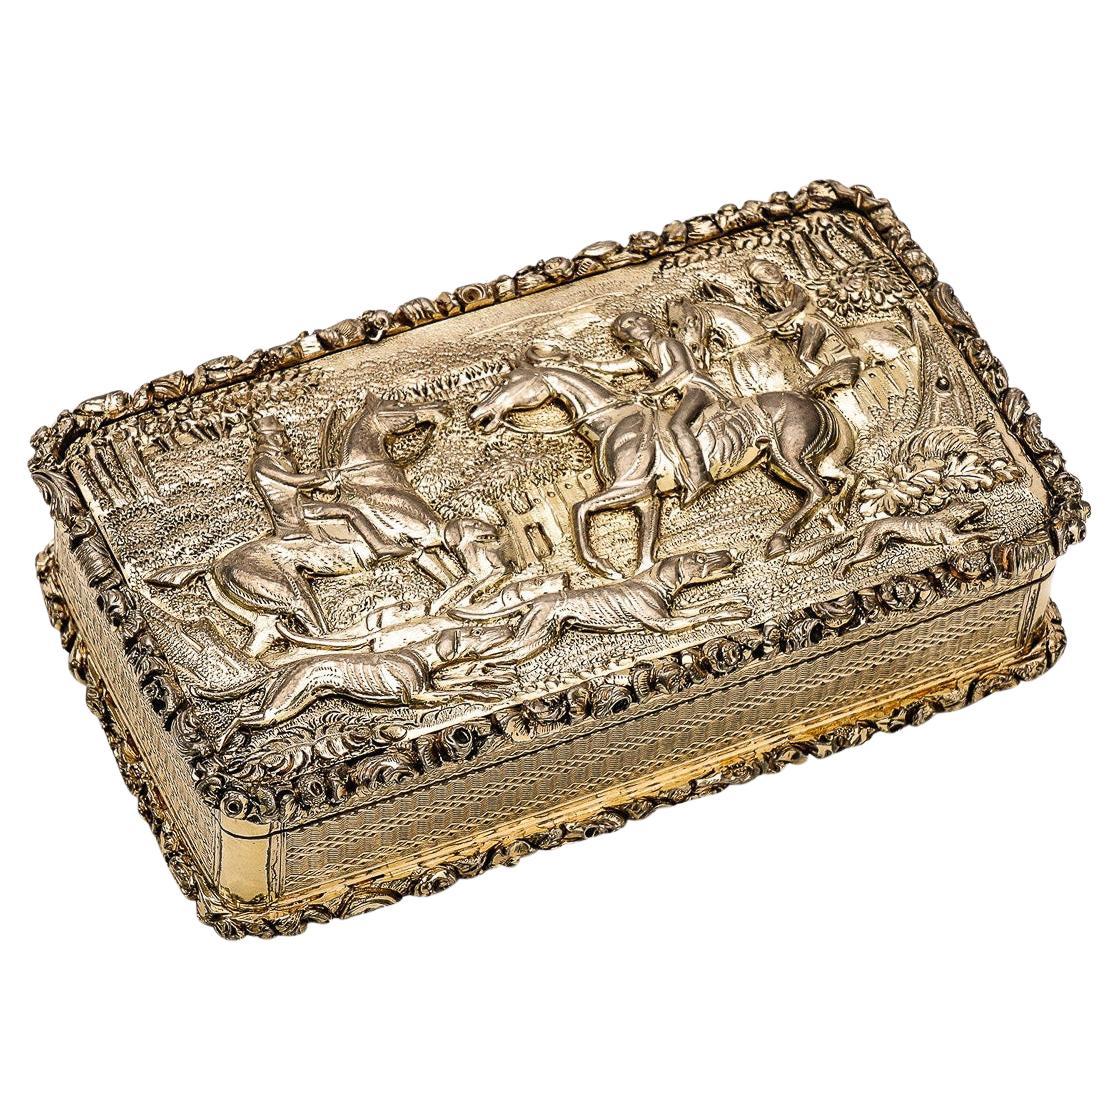 19th Century Georgian Solid Silver-Gilt Hunting Snuff Box, Birmingham, c.1830